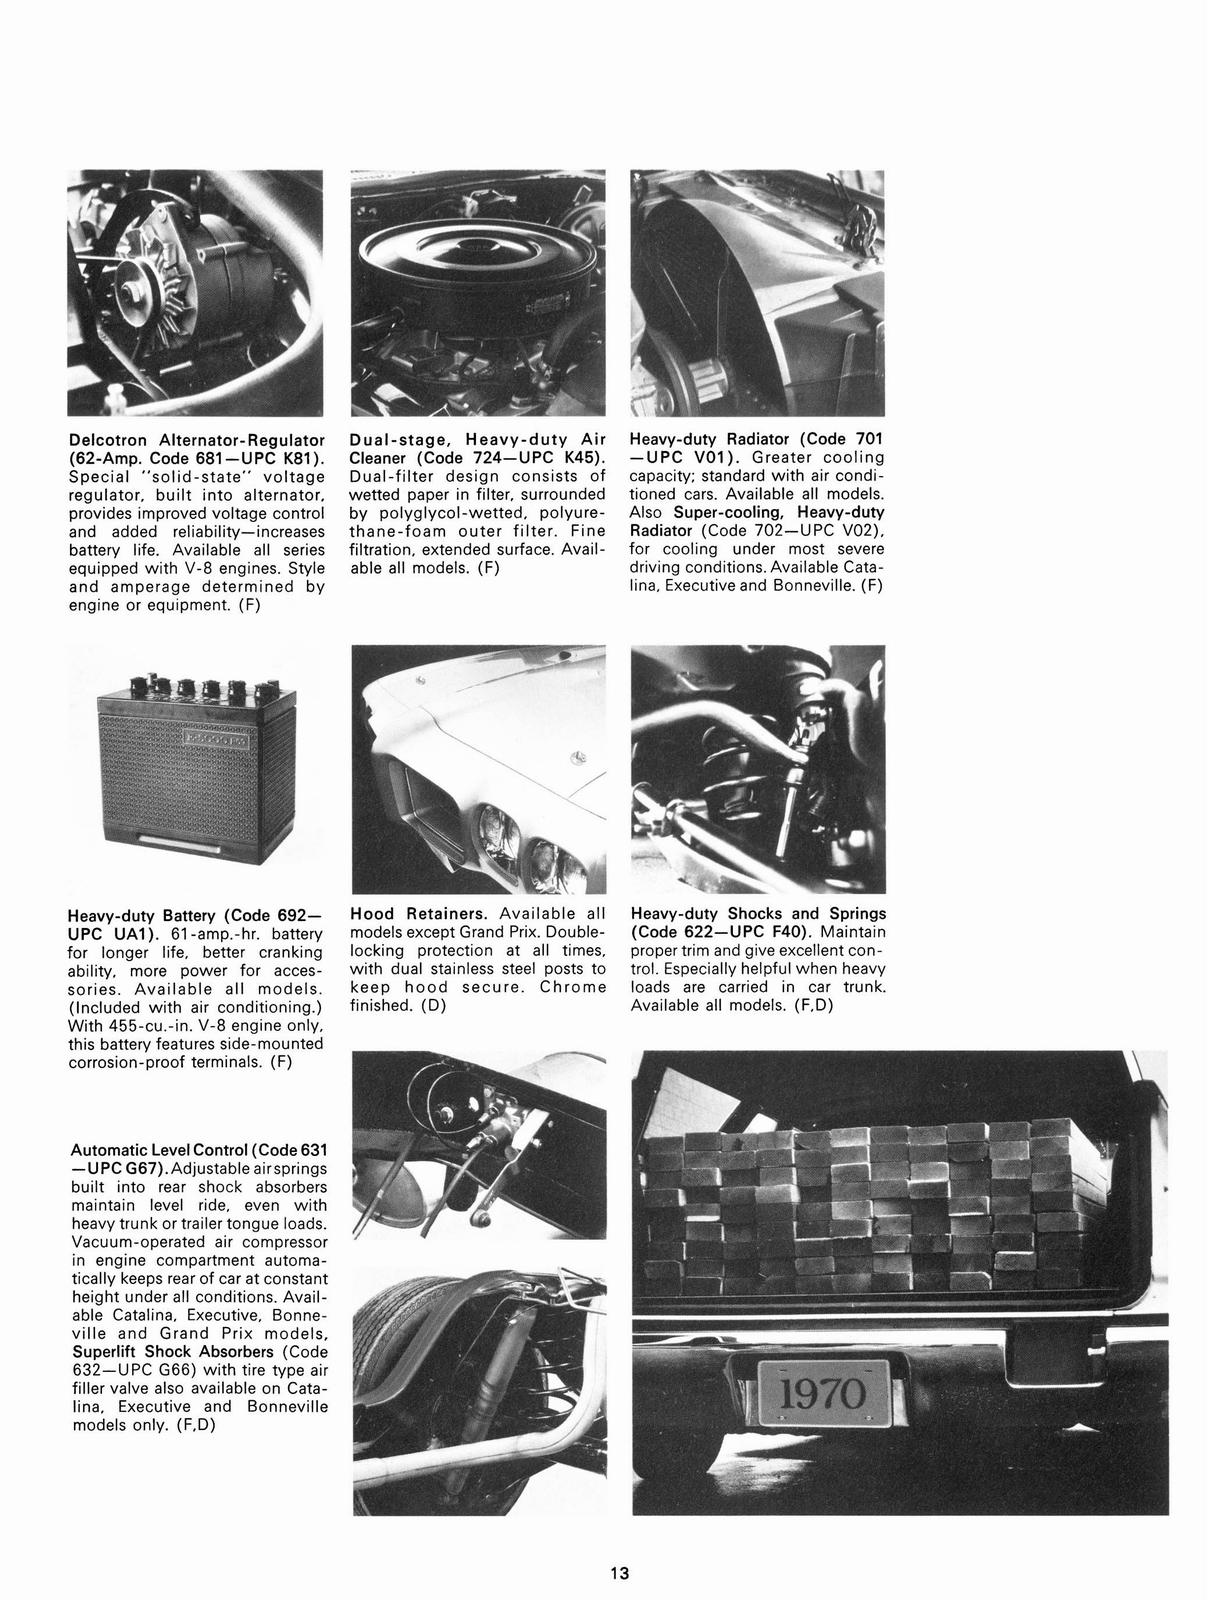 n_1970 Pontiac Accessories-13.jpg